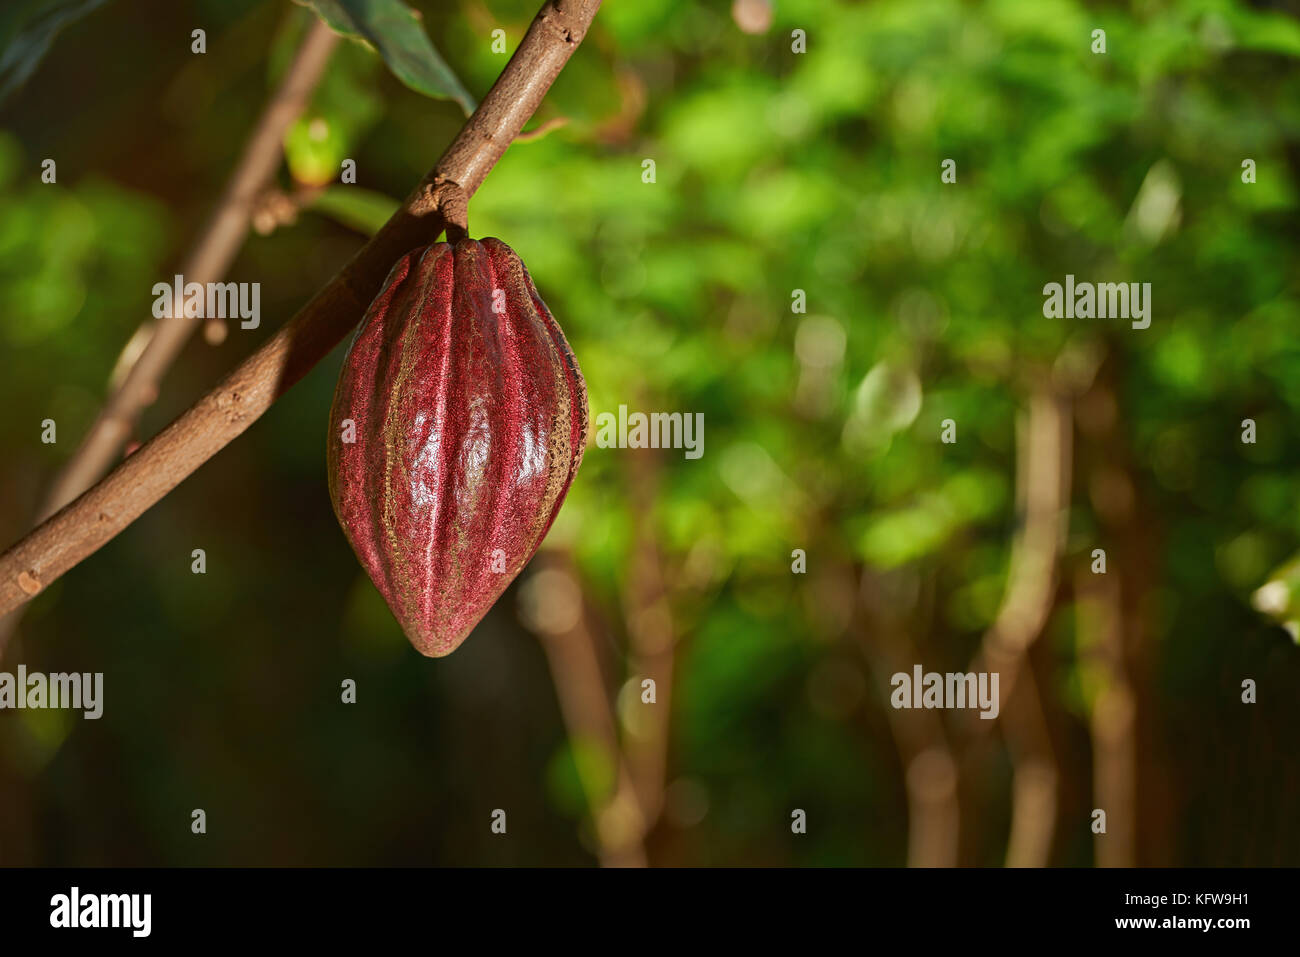 Cacao Marrone impianto pod appeso sul ramo di albero. agricoltura fattoria di cacao Foto Stock